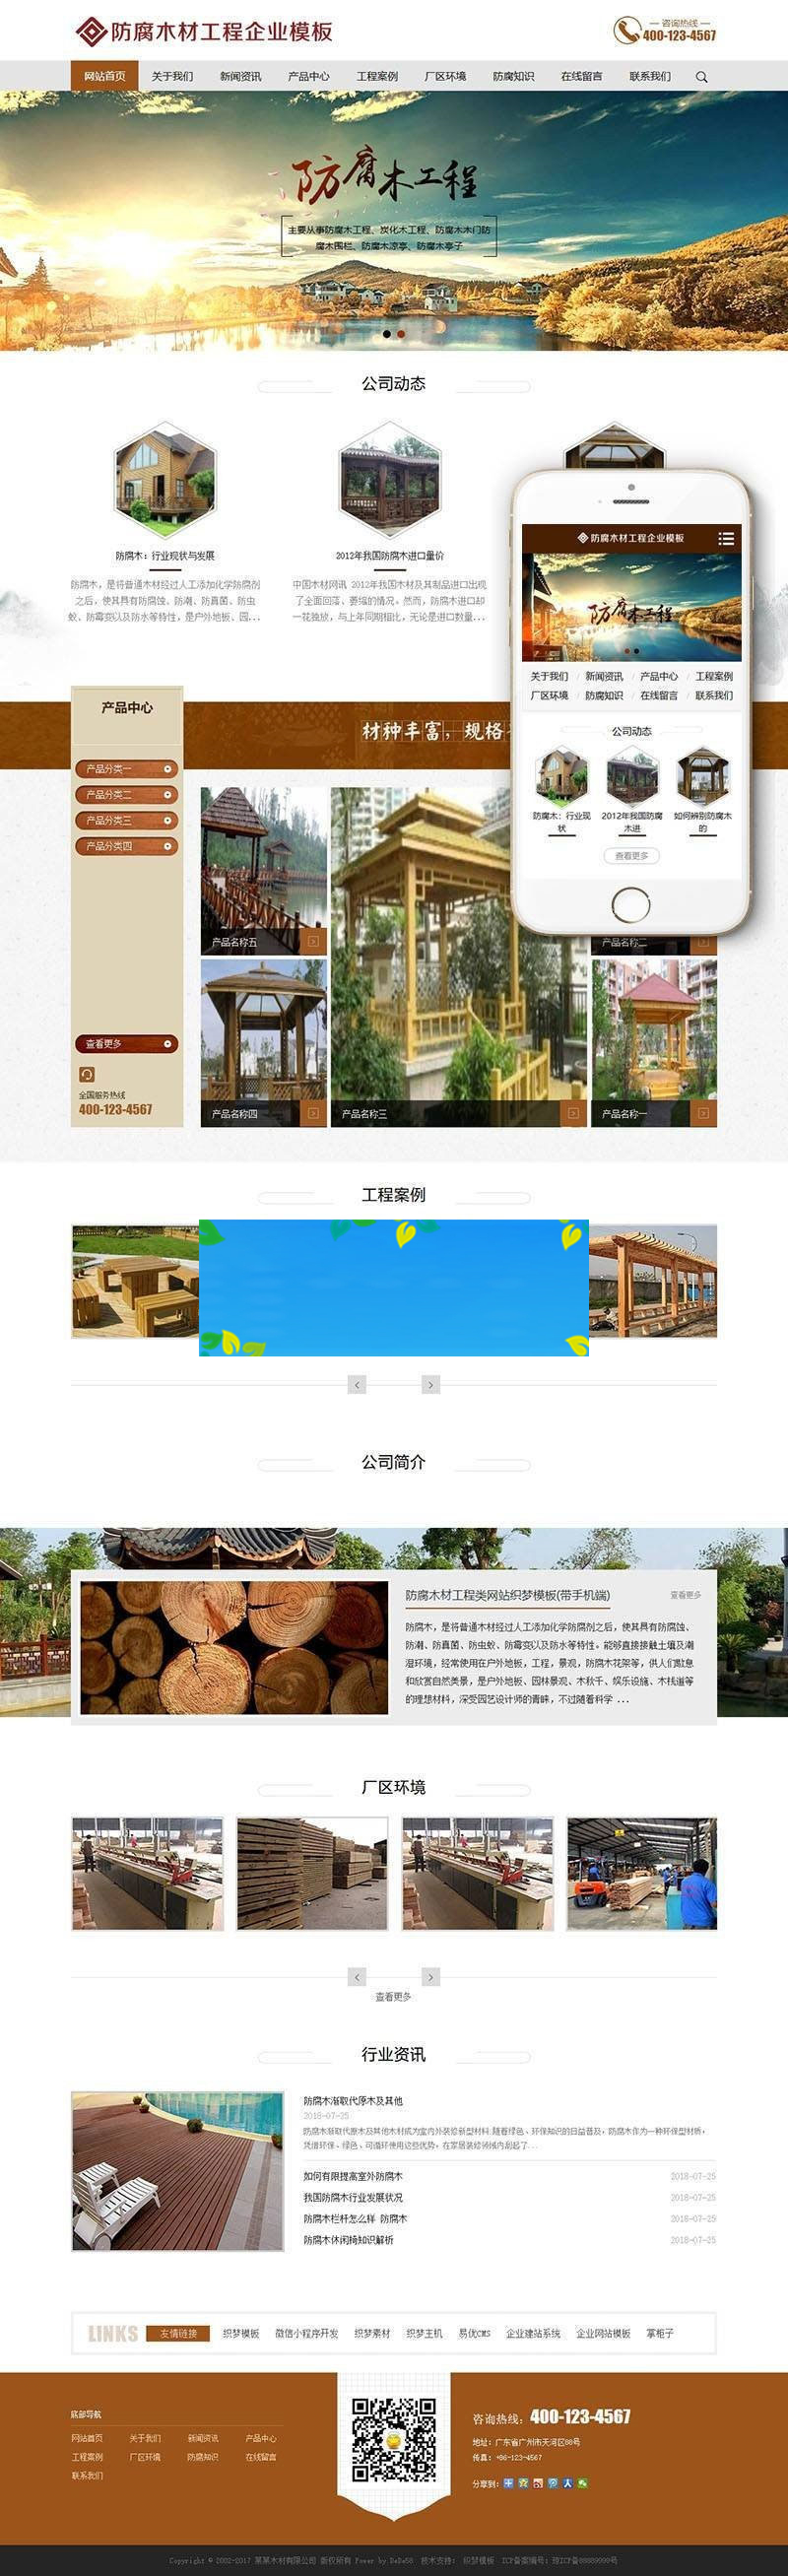 织梦dedecms防腐木材工程公司网站模板(带手机移动端)-何以博客